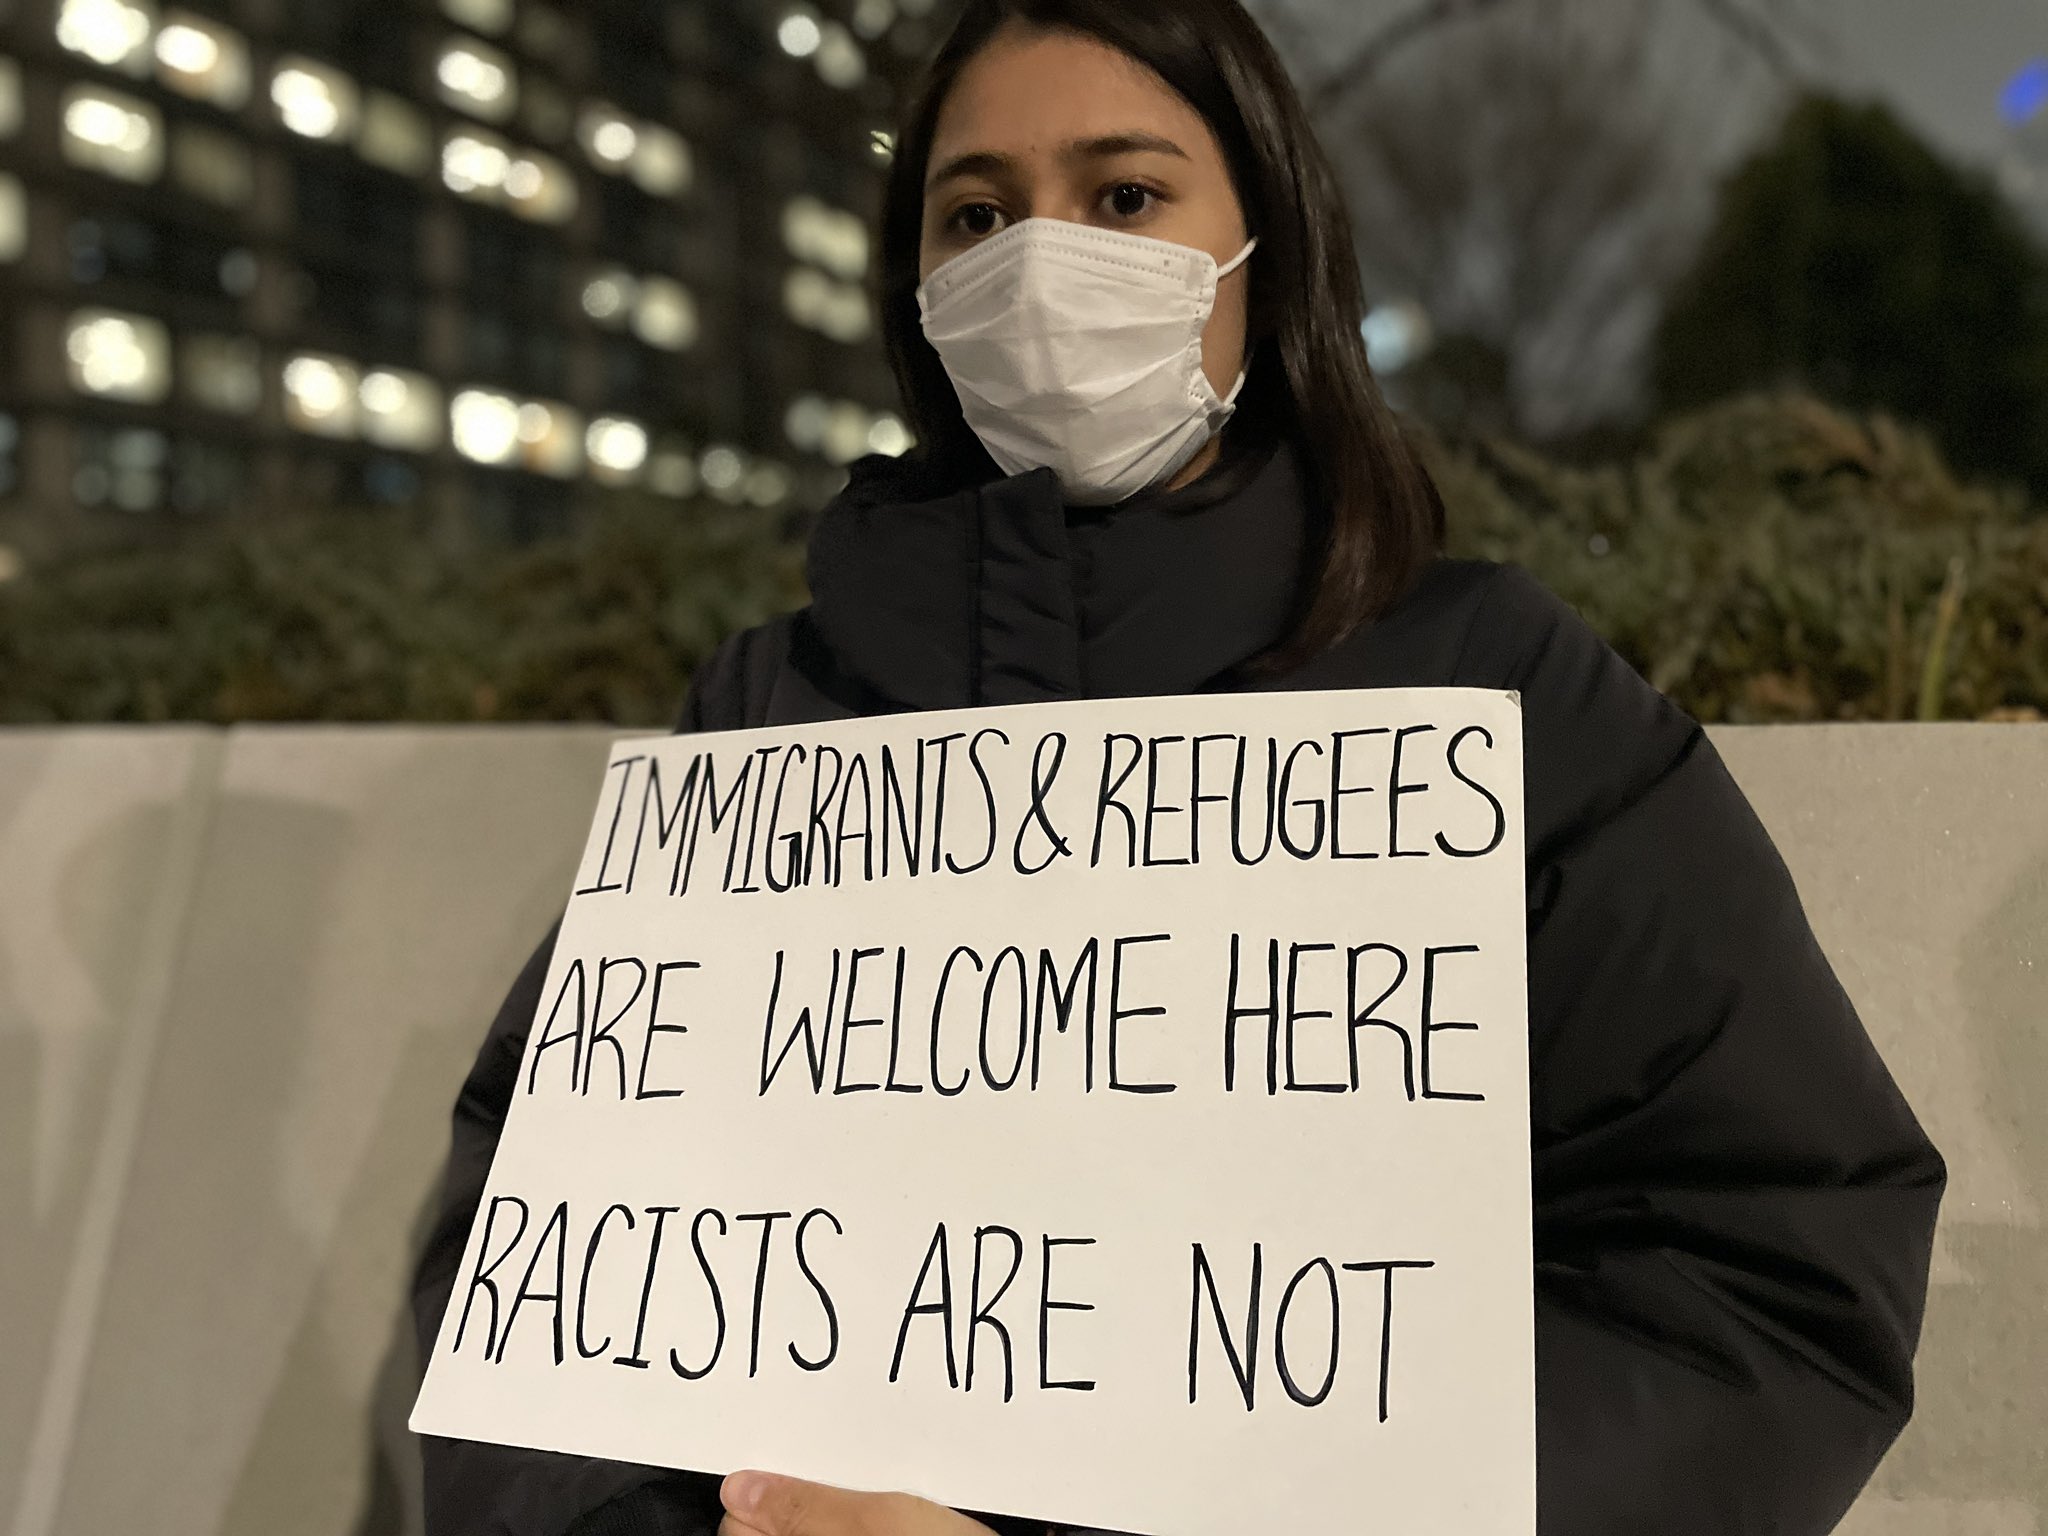 プラカードをもった女性
Immigpants & refugees are welcome here 
Racists are not